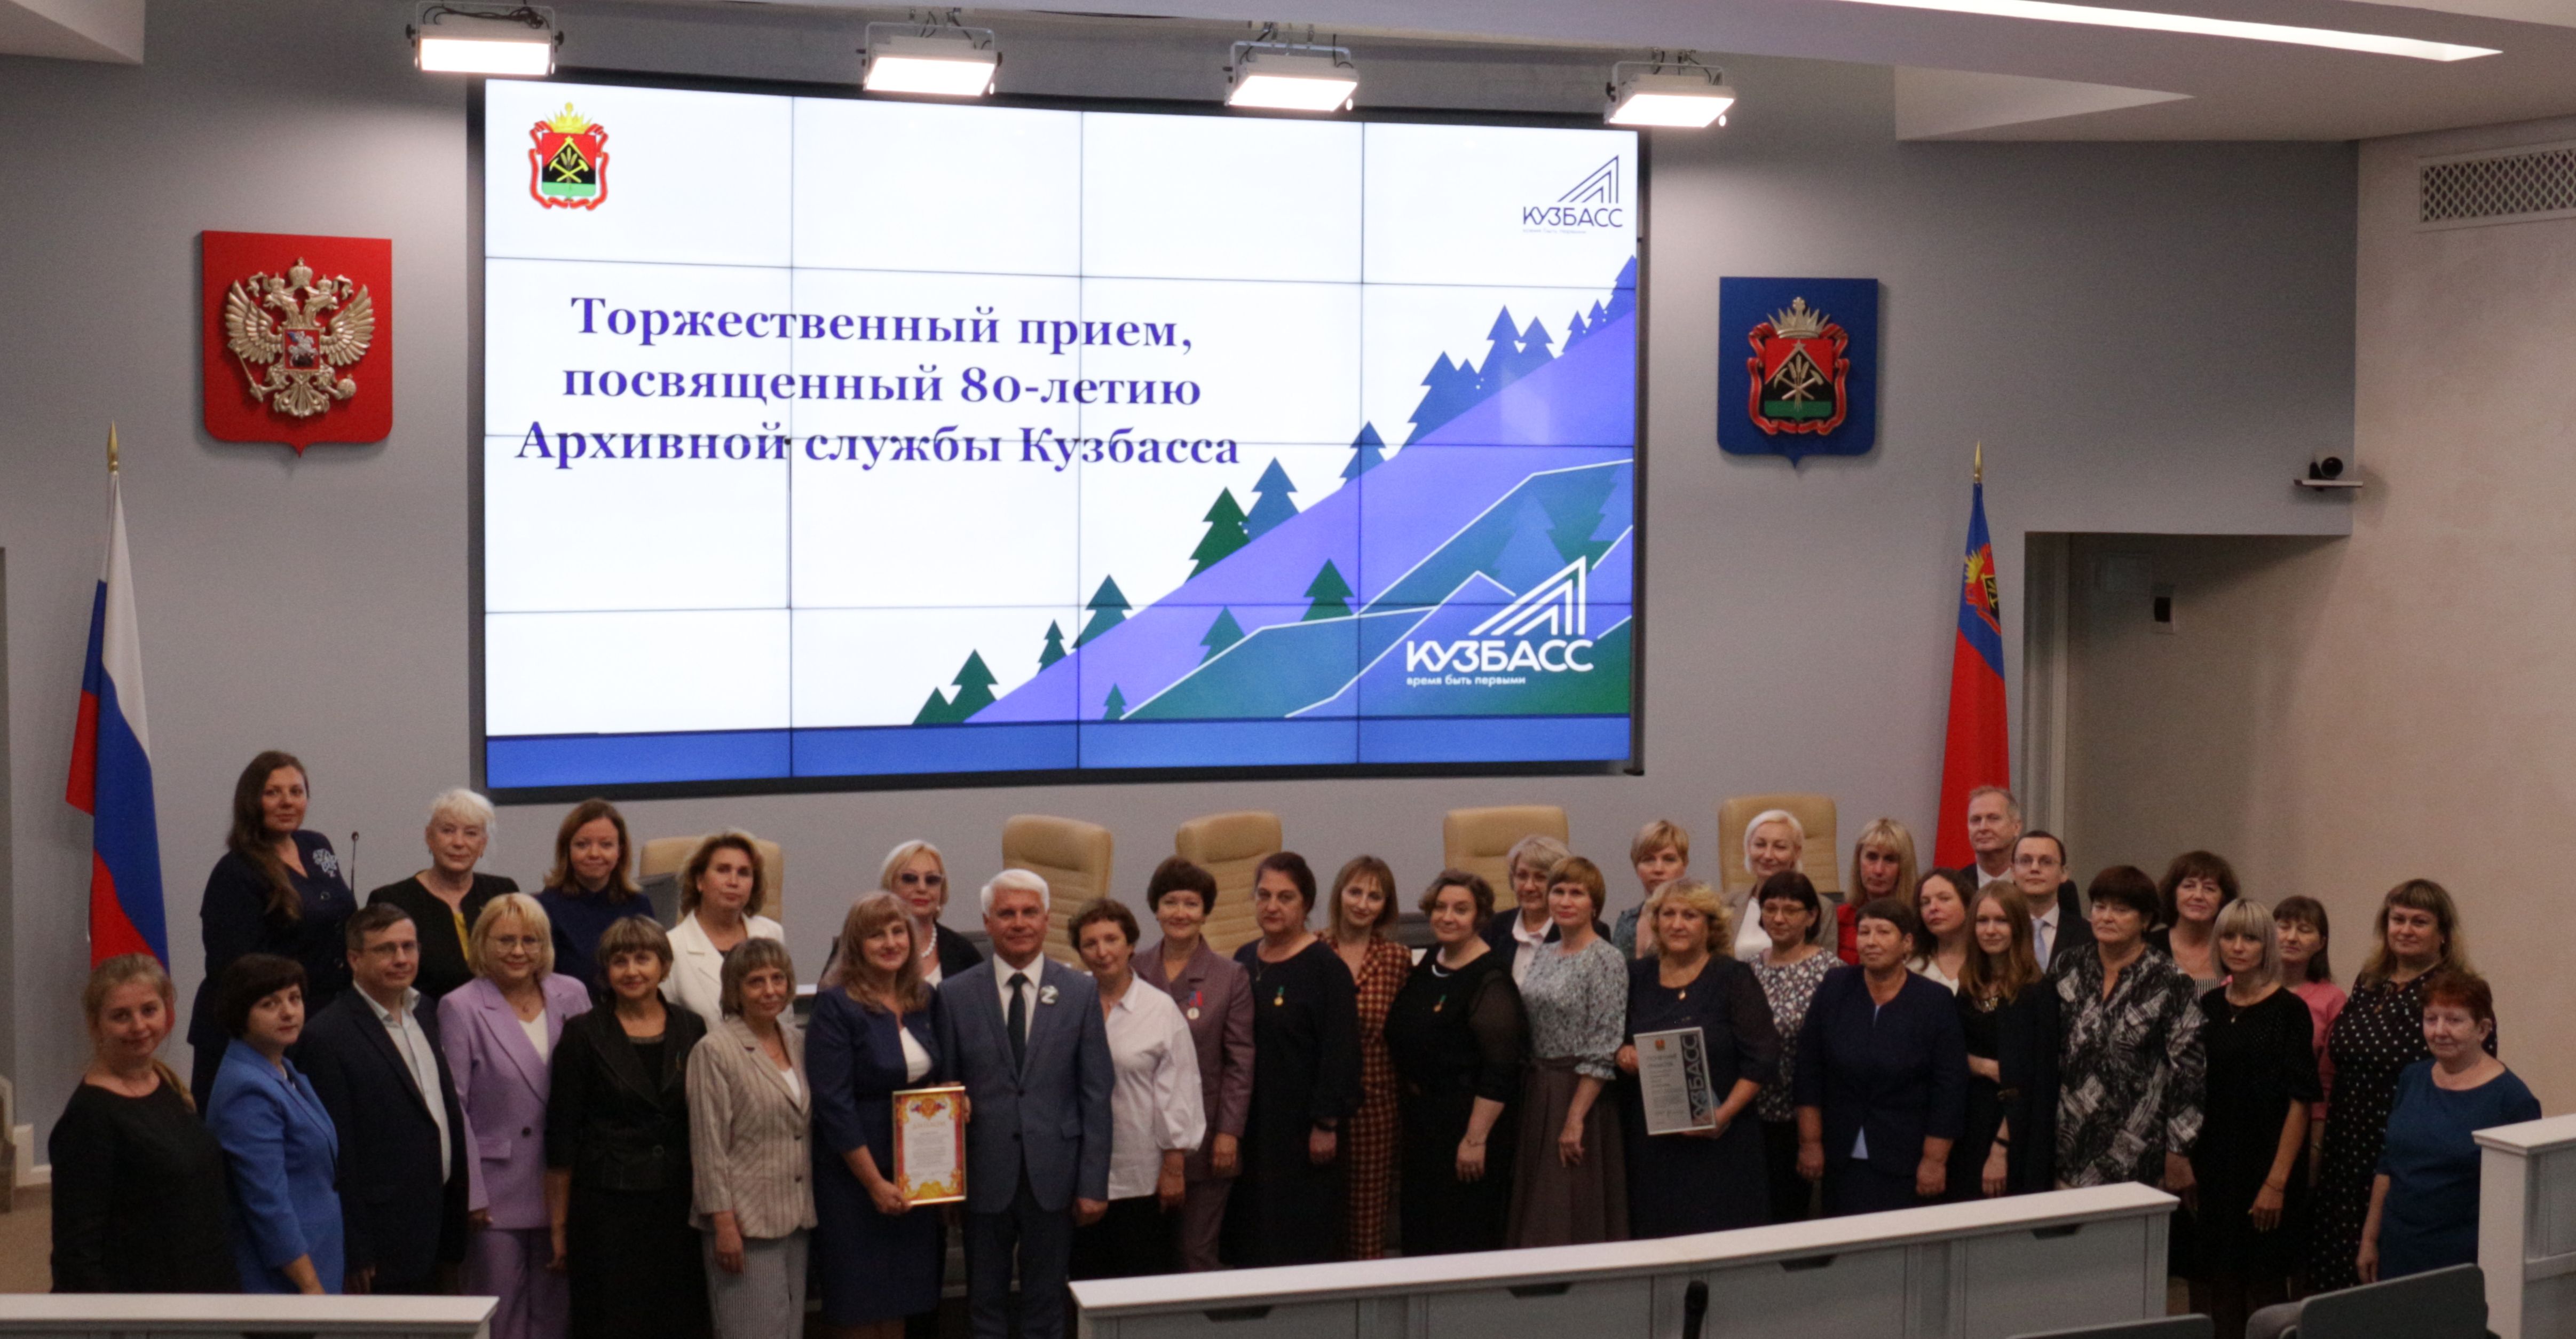 5 сентября состоялся торжественный прием, посвященный 80-летию Архивной службы Кузбасса